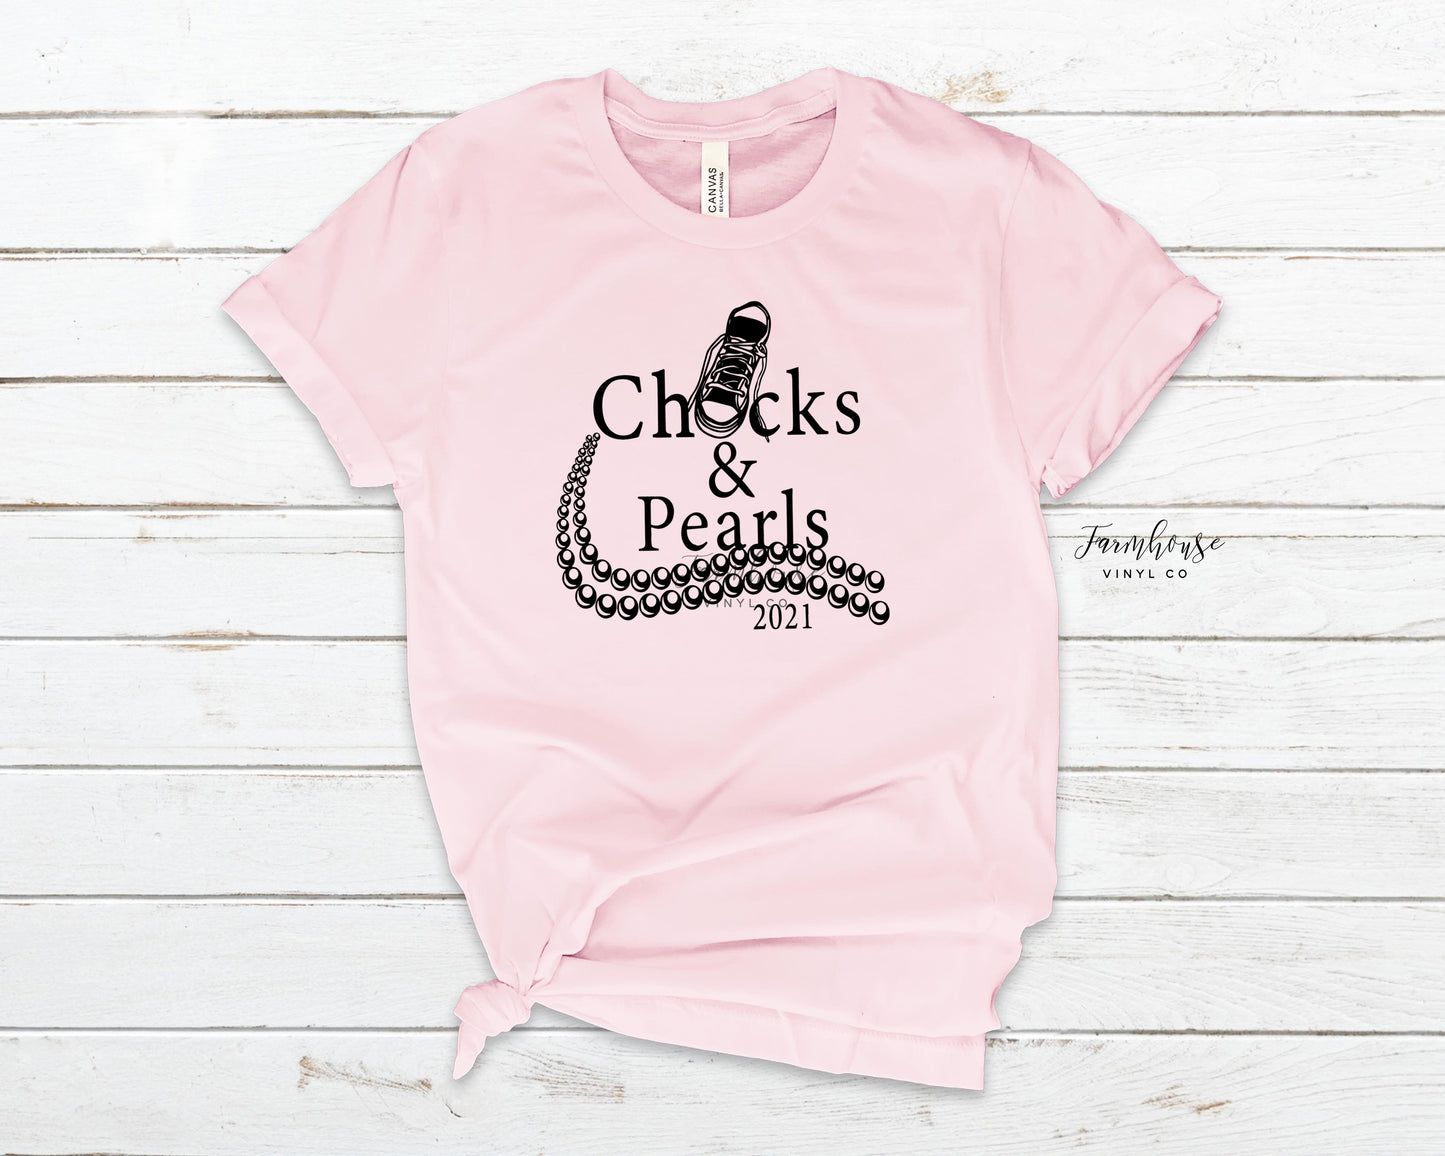 Chucks and Pearls Short Sleeve Shirt - Farmhouse Vinyl Co